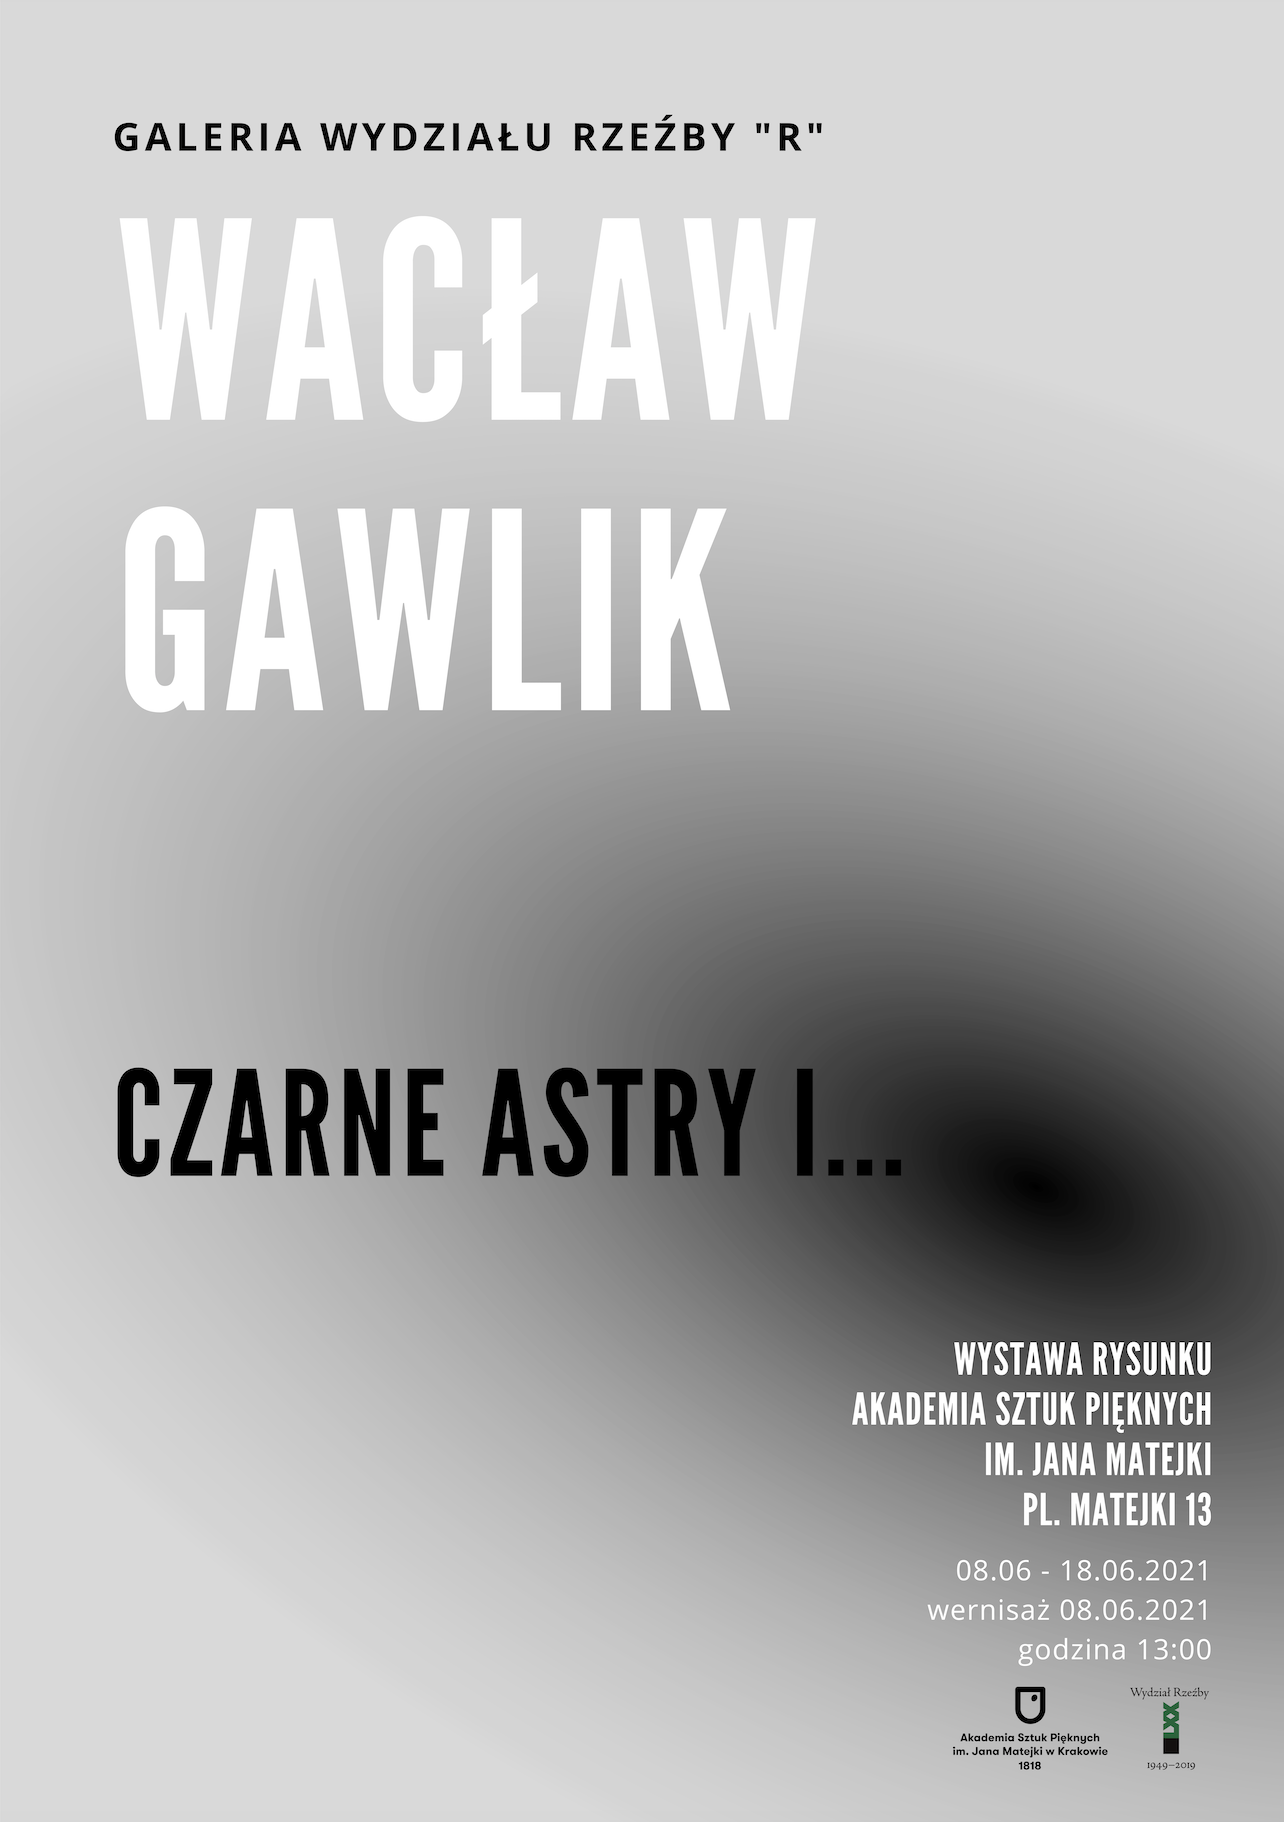 Wacław Gawlik - Czarne astry i ...